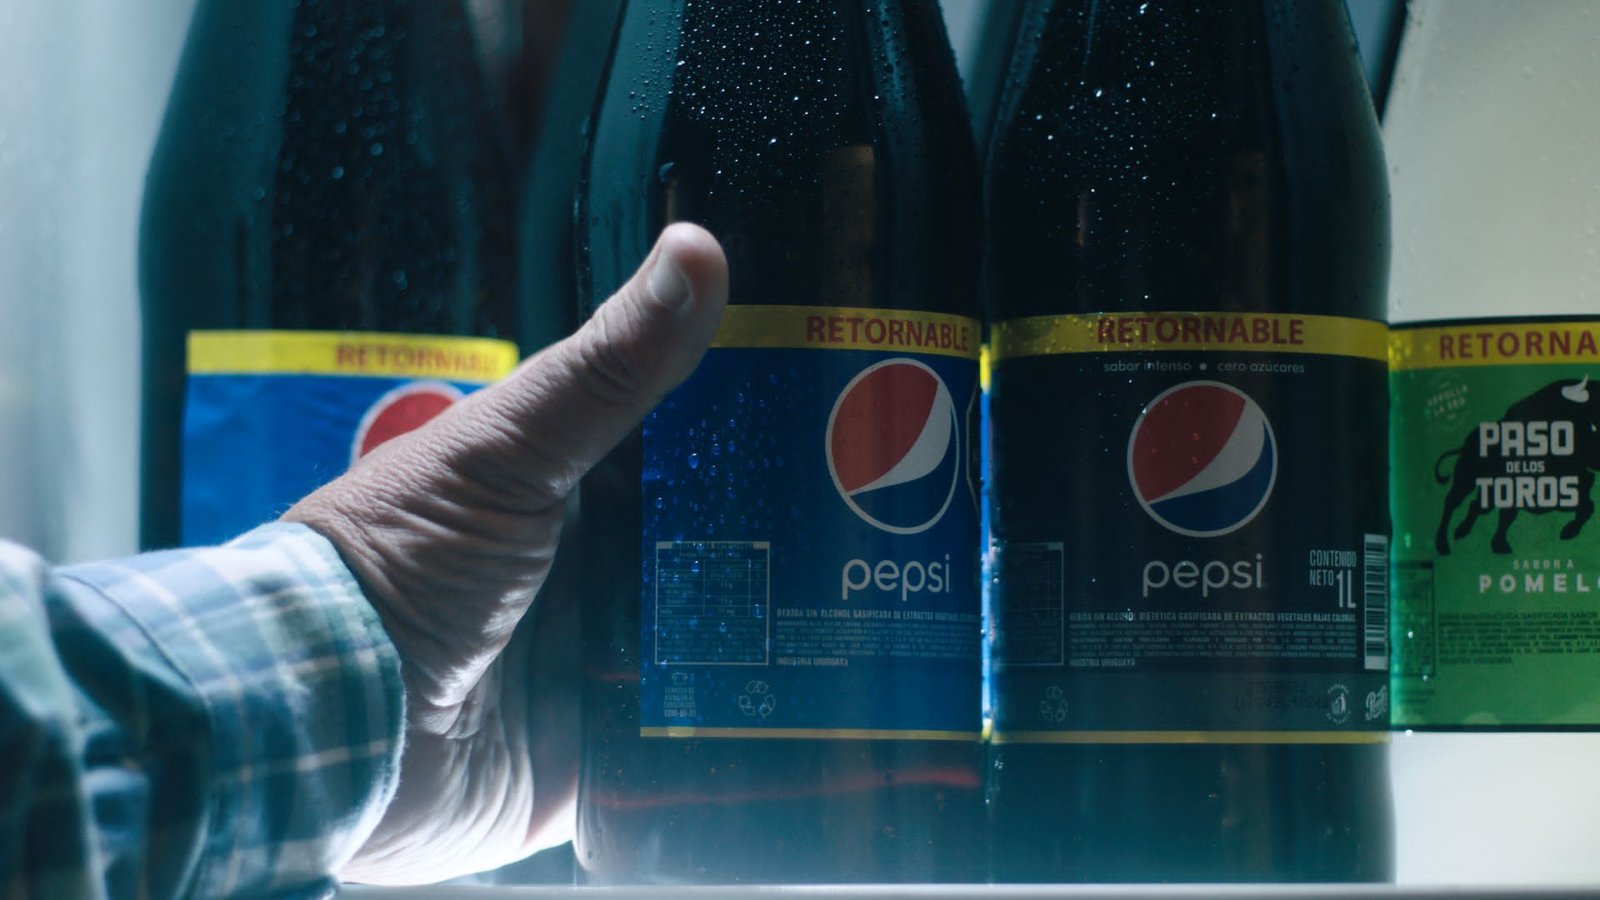 PepsiCo modificó sus envases para disminuir el uso de plásticos.